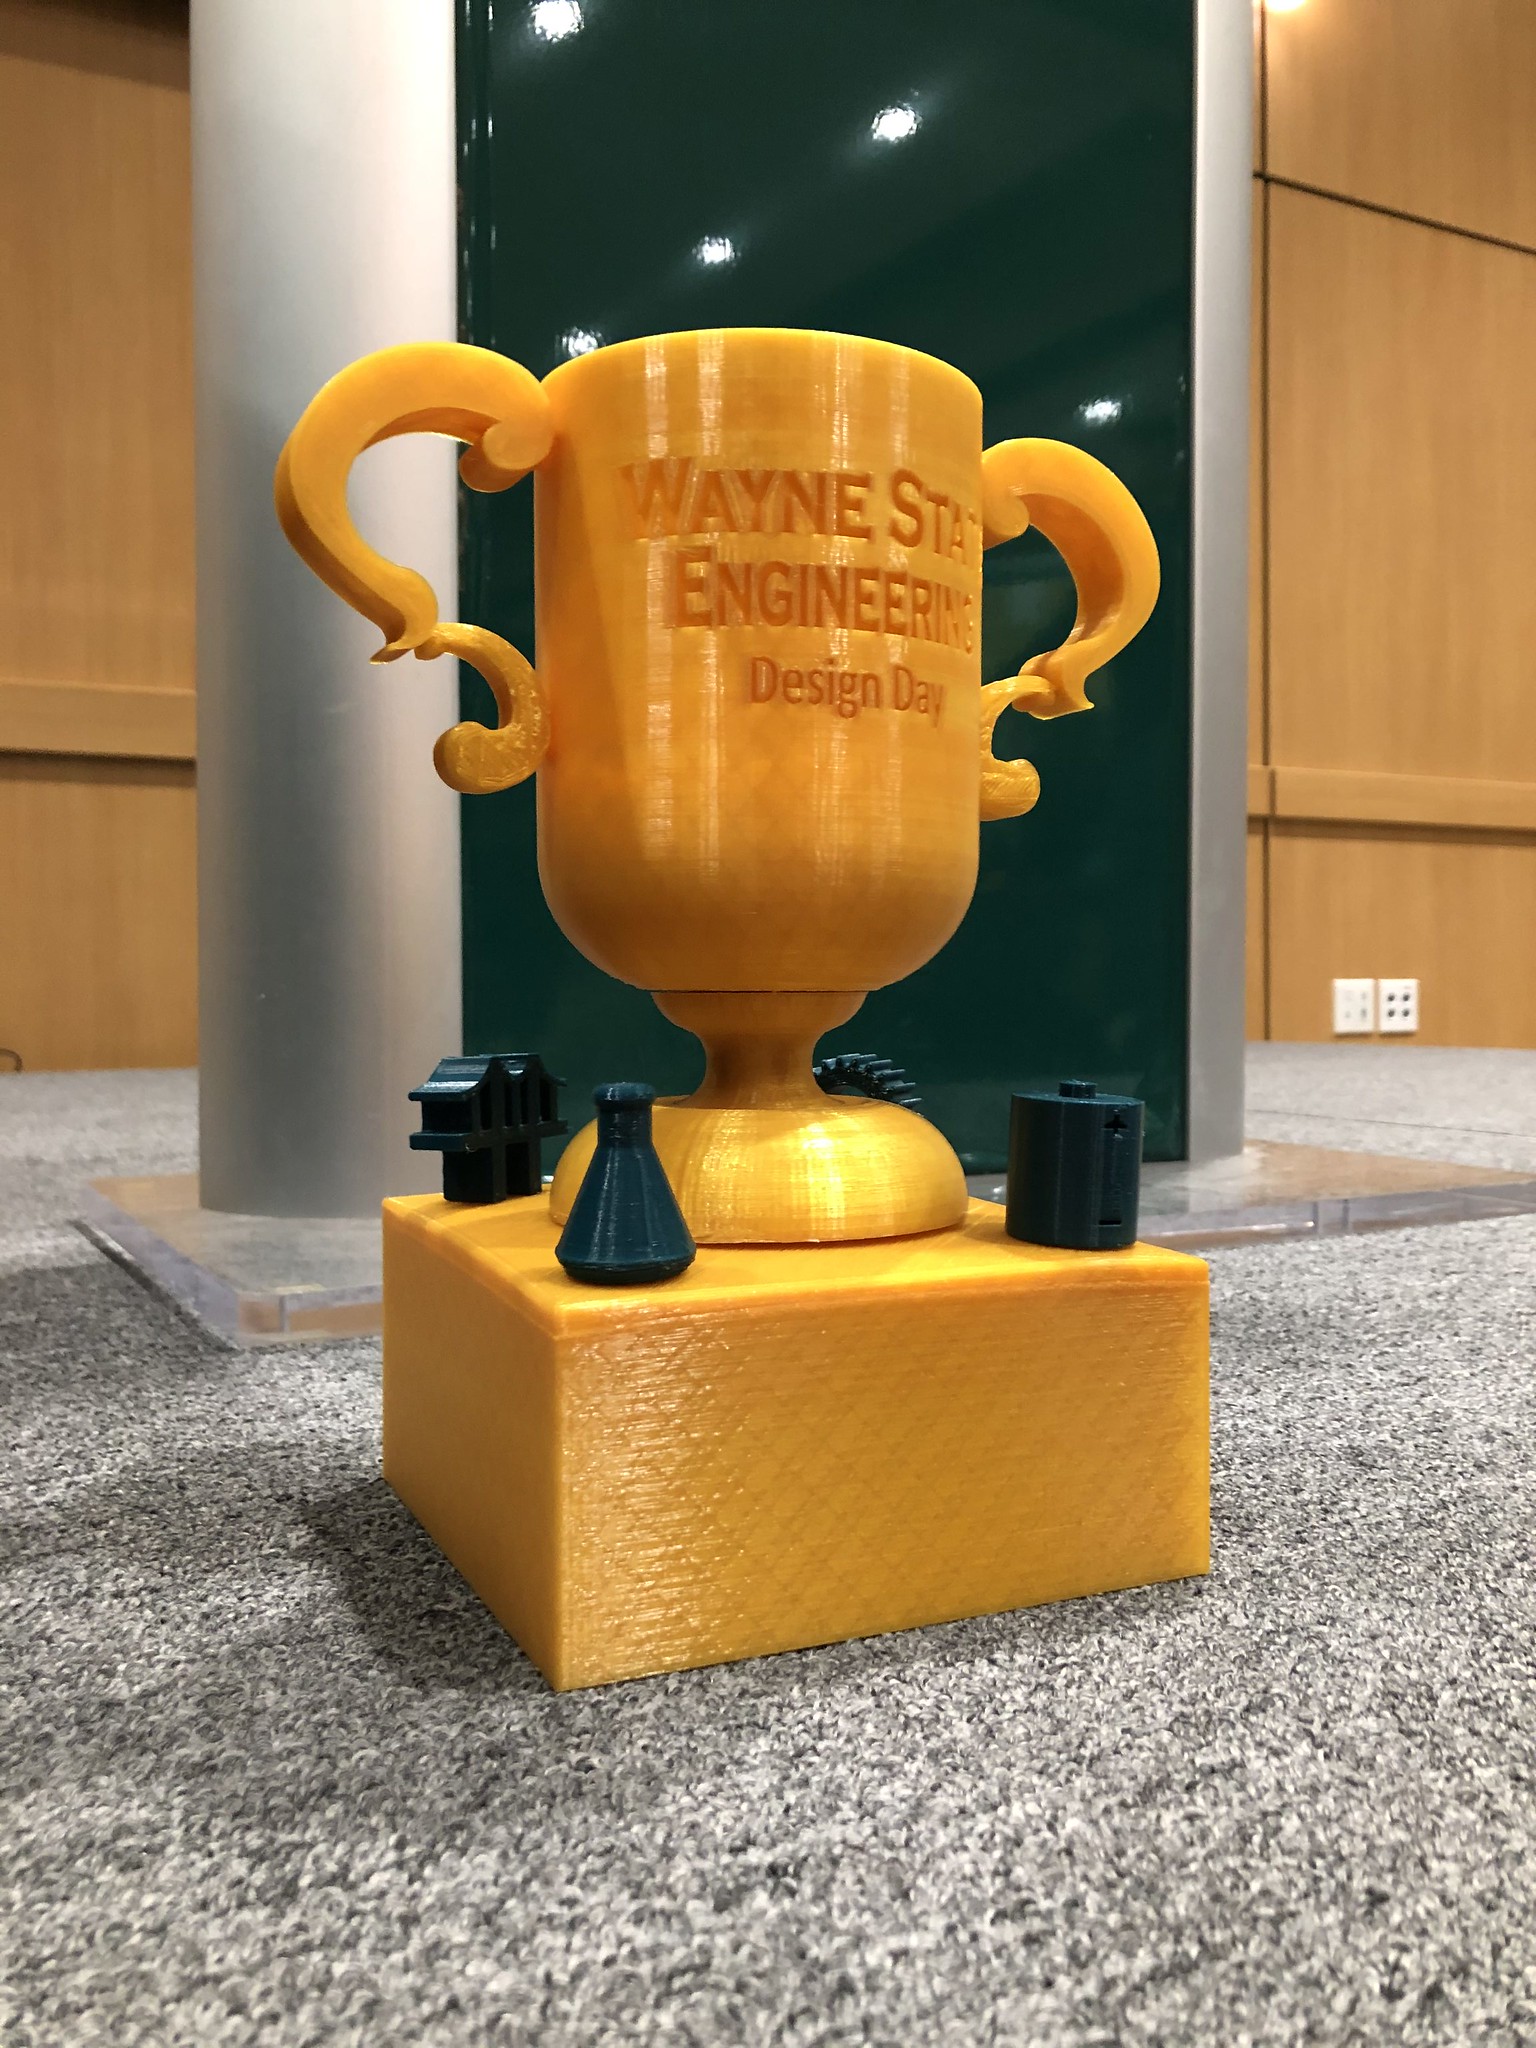 3D-printed trophy